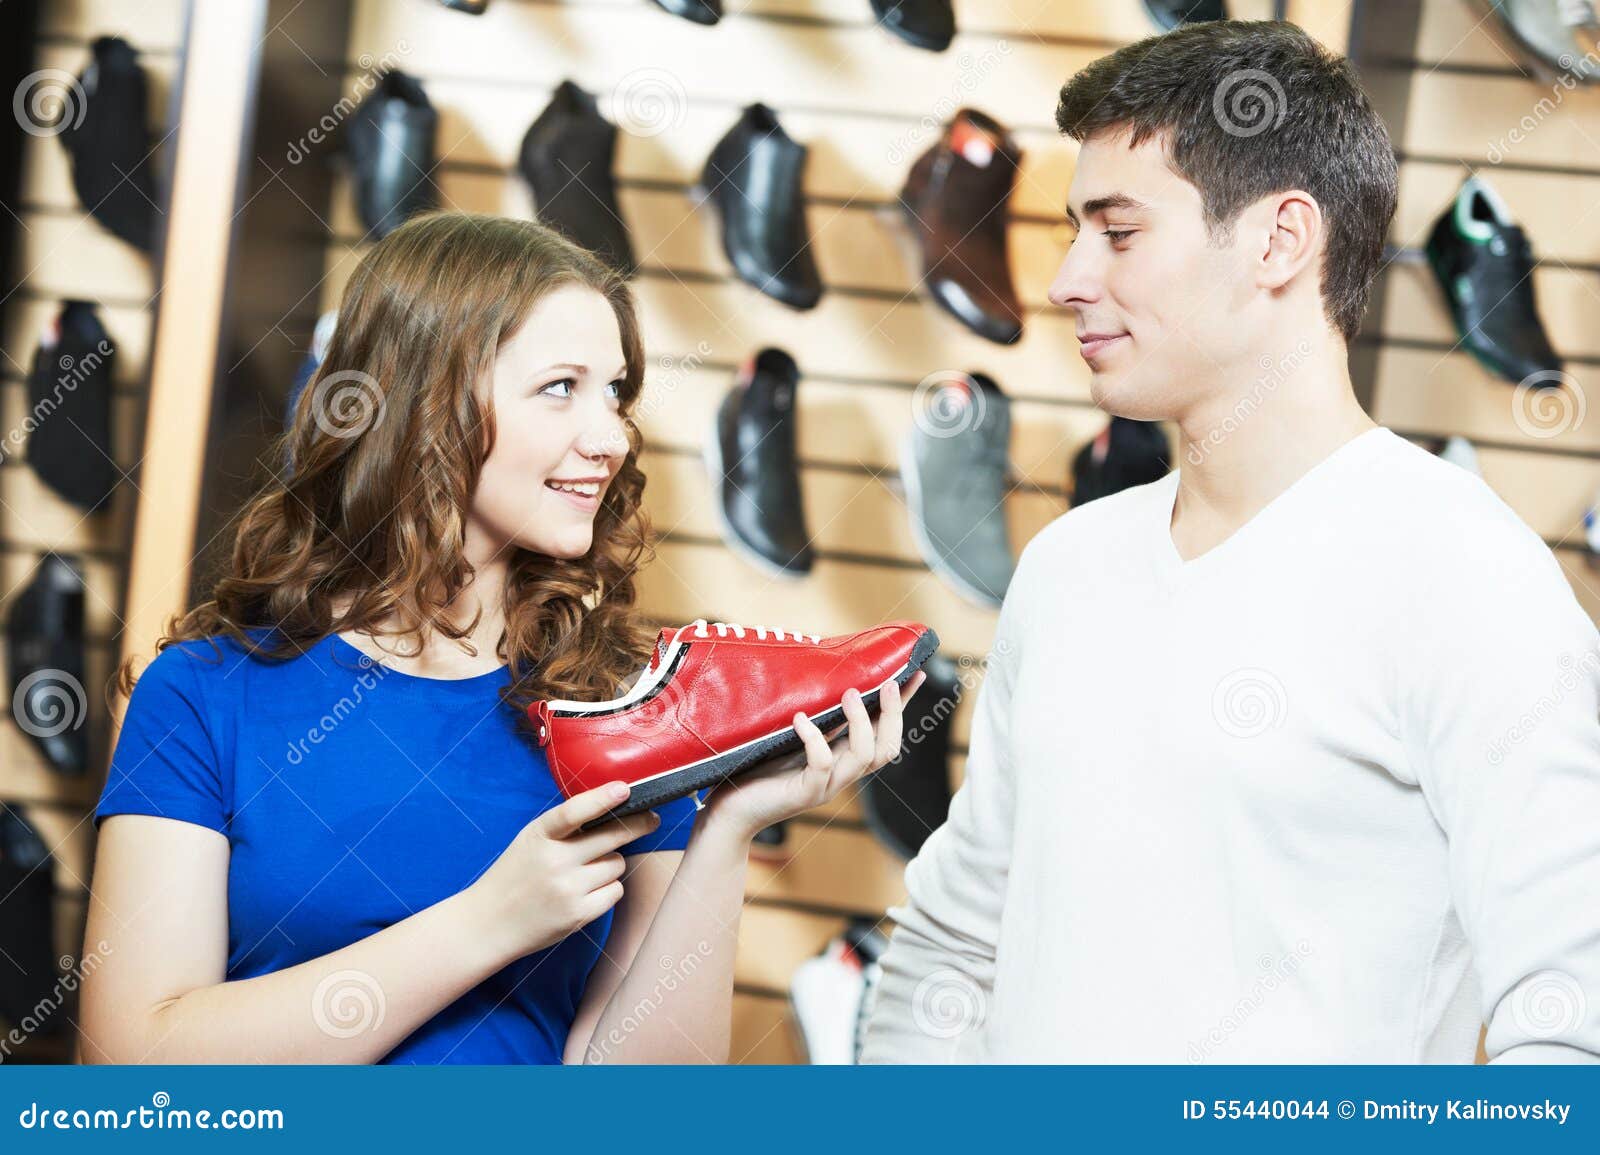 Продавец обувного магазина. Продавец в магазине обуви. Покупатели в обувном магазине. Покупатель в магазине обуви. Обувной для мужчин.